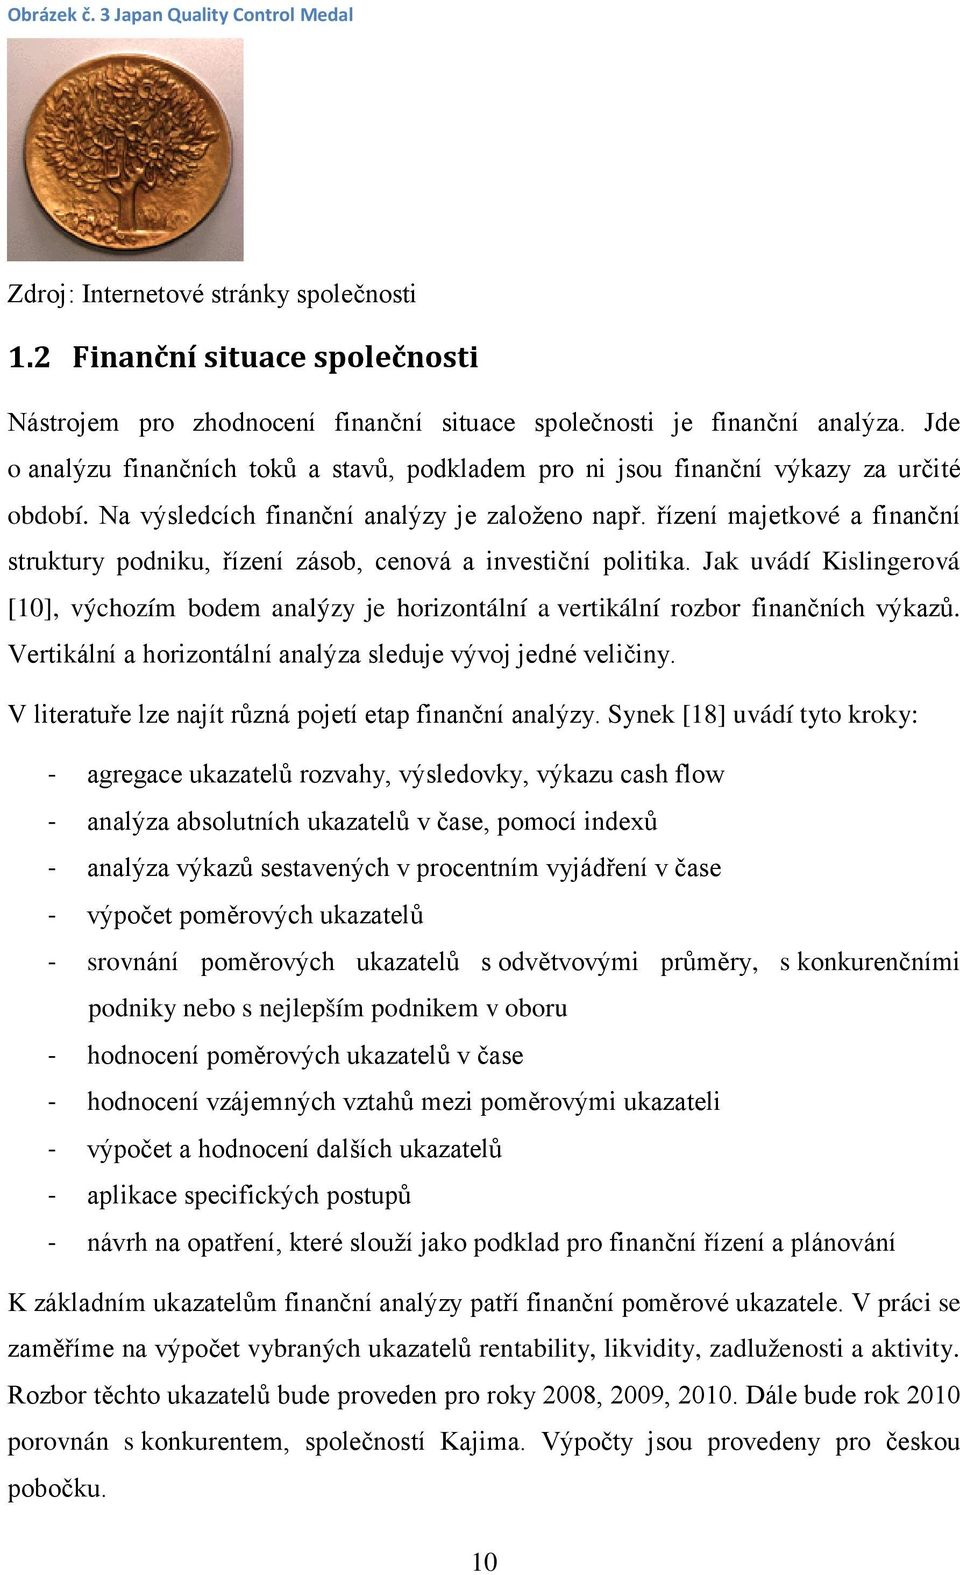 řízení majetkové a finanční struktury podniku, řízení zásob, cenová a investiční politika. Jak uvádí Kislingerová [10], výchozím bodem analýzy je horizontální a vertikální rozbor finančních výkazů.